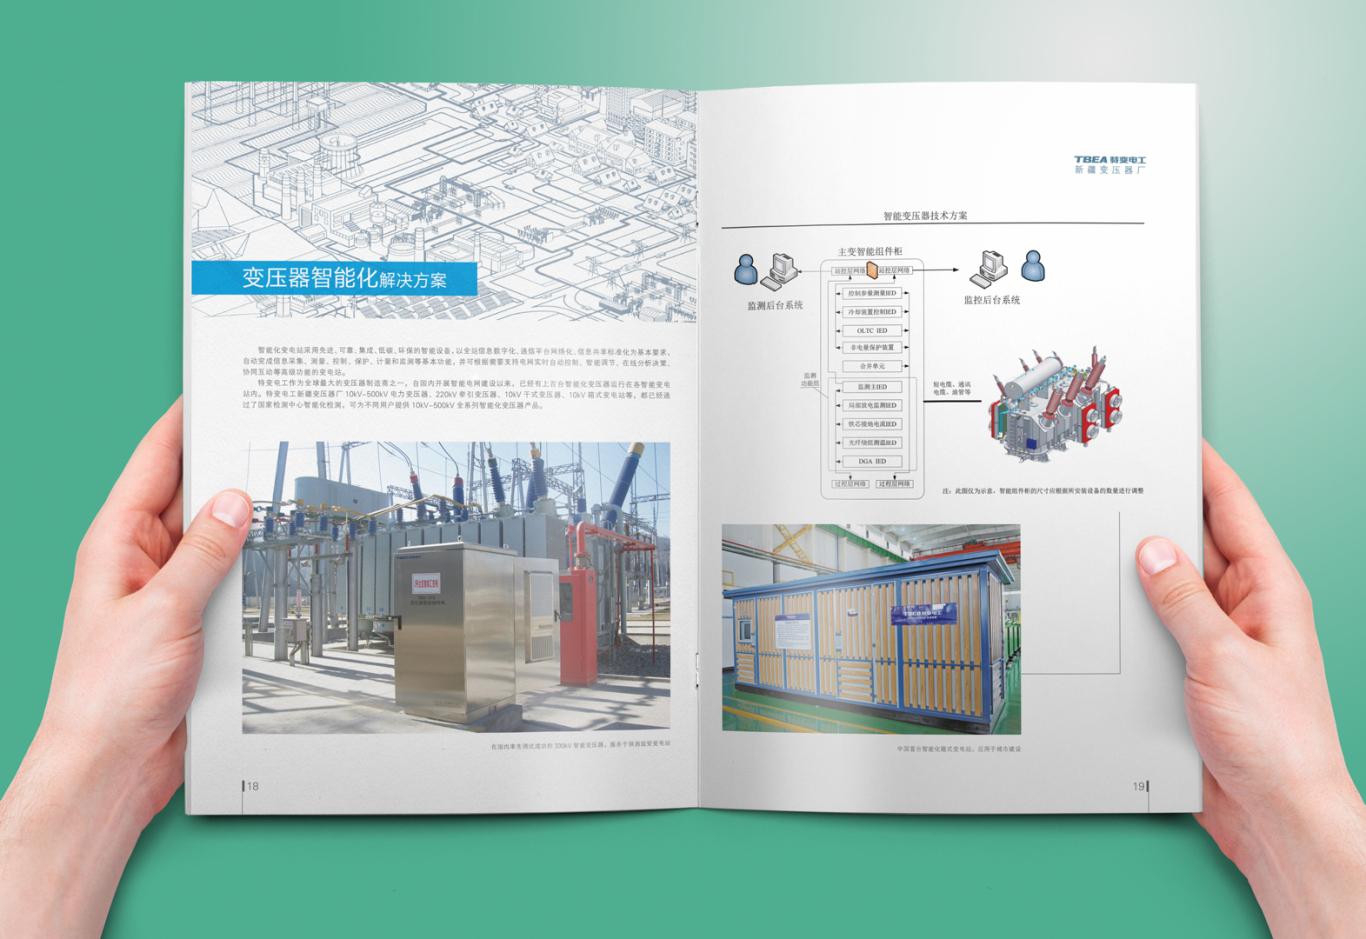 特变电工新疆变压器厂企业画册设计图3